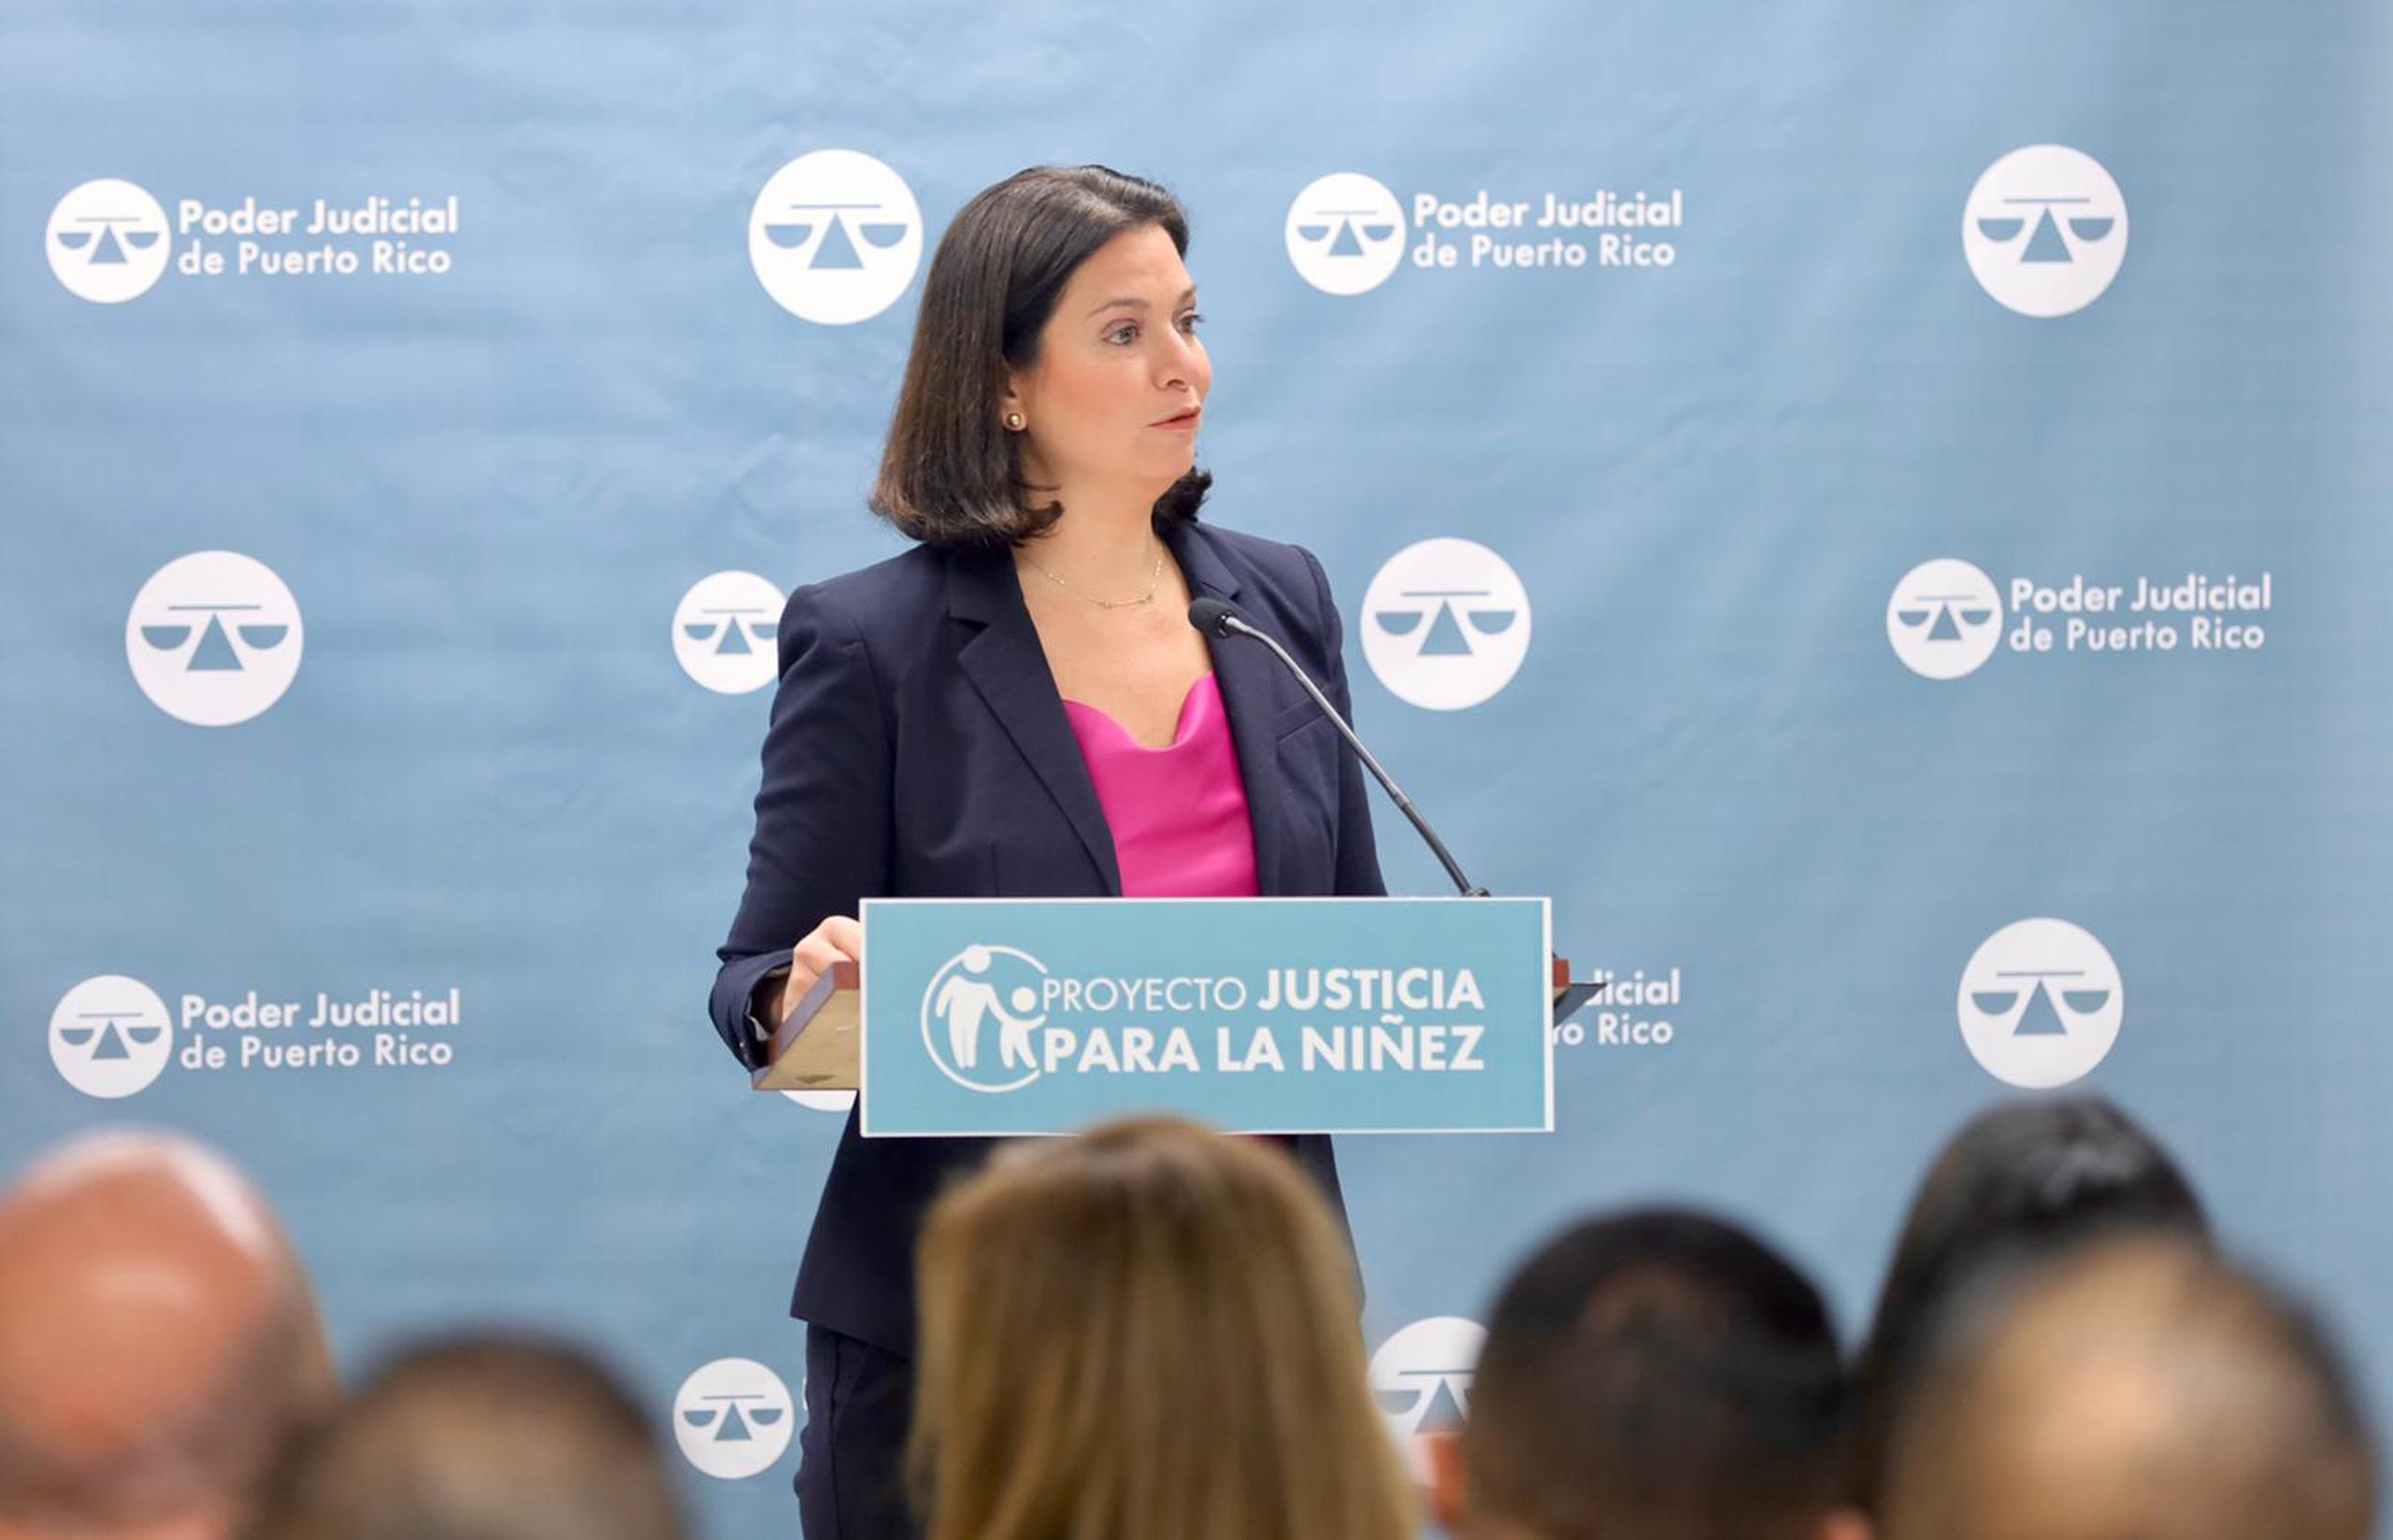 La jueza presidenta del Tribunal Supremo, Maite D. Oronoz Rodríguez, anunció la expansión del Proyecto Justicia para la Niñez del Poder Judicial a la Región Judicial de Ponce.